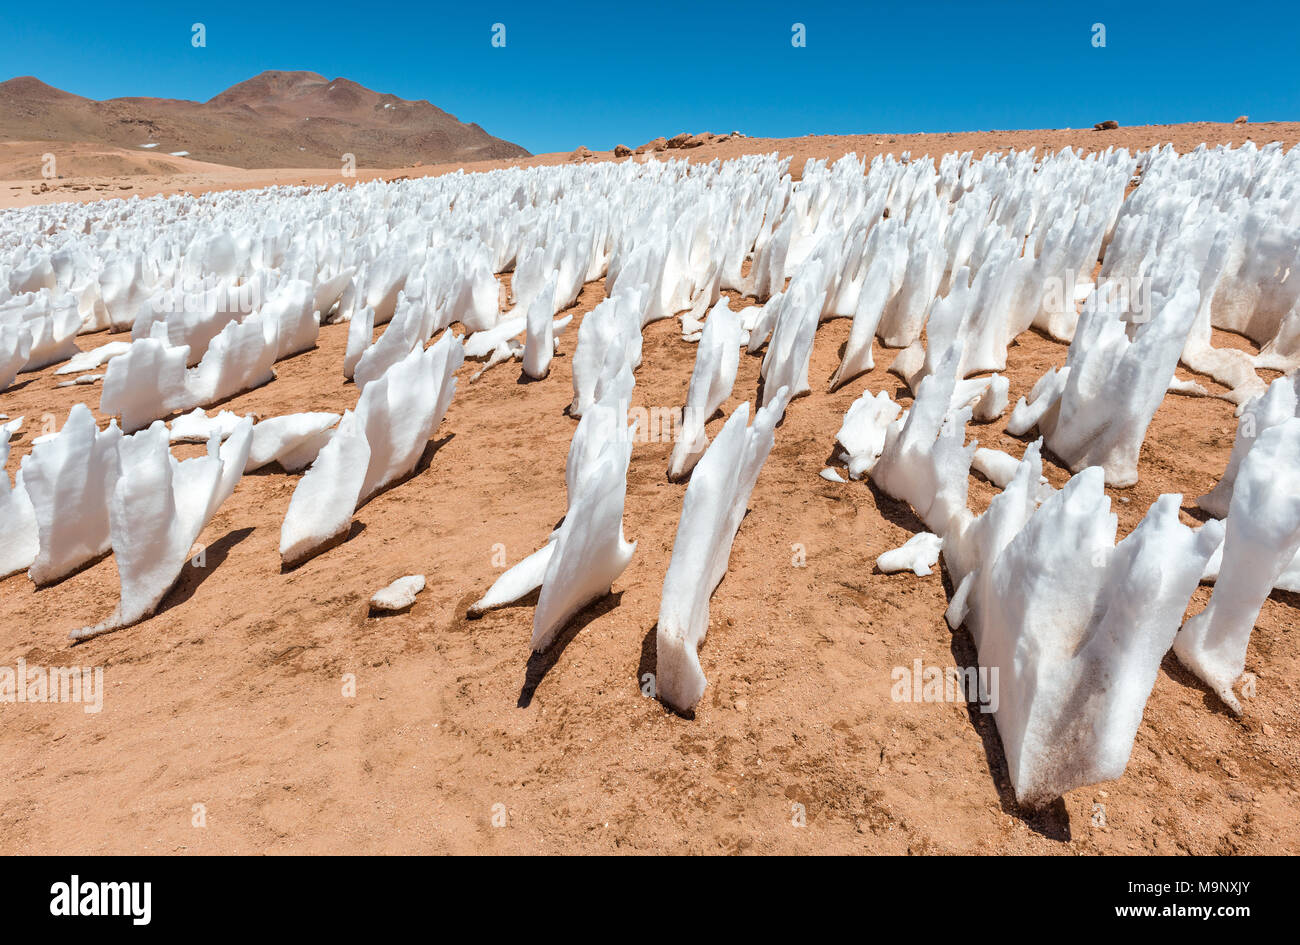 Formations de glace en raison de l'érosion éolienne dans le désert de Siloli situé entre le désert d'Atacama au Chili et la télévision sel Uyuni, Bolivie, Amérique du Sud. Banque D'Images